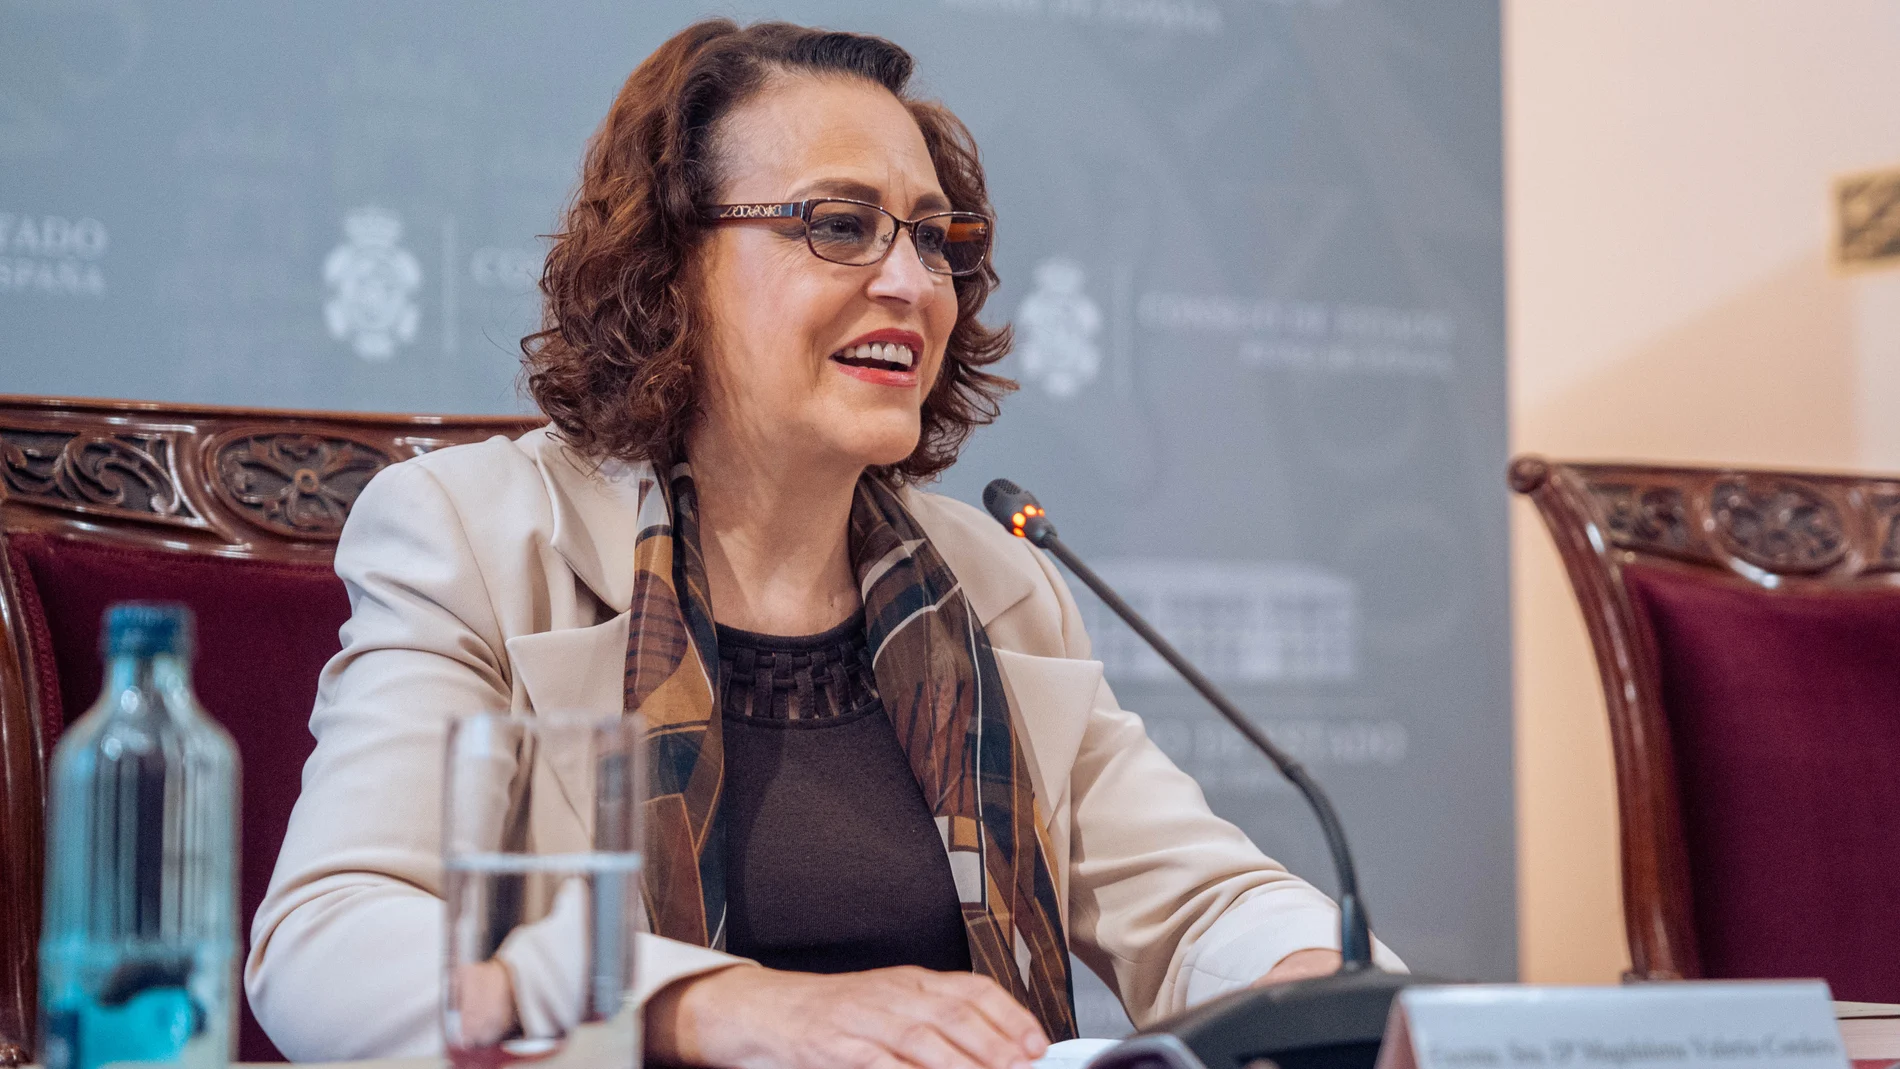 El TS anula el nombramiento de Magdalena Valerio como presidenta del Consejo de Estado por no ser jurista de prestigio